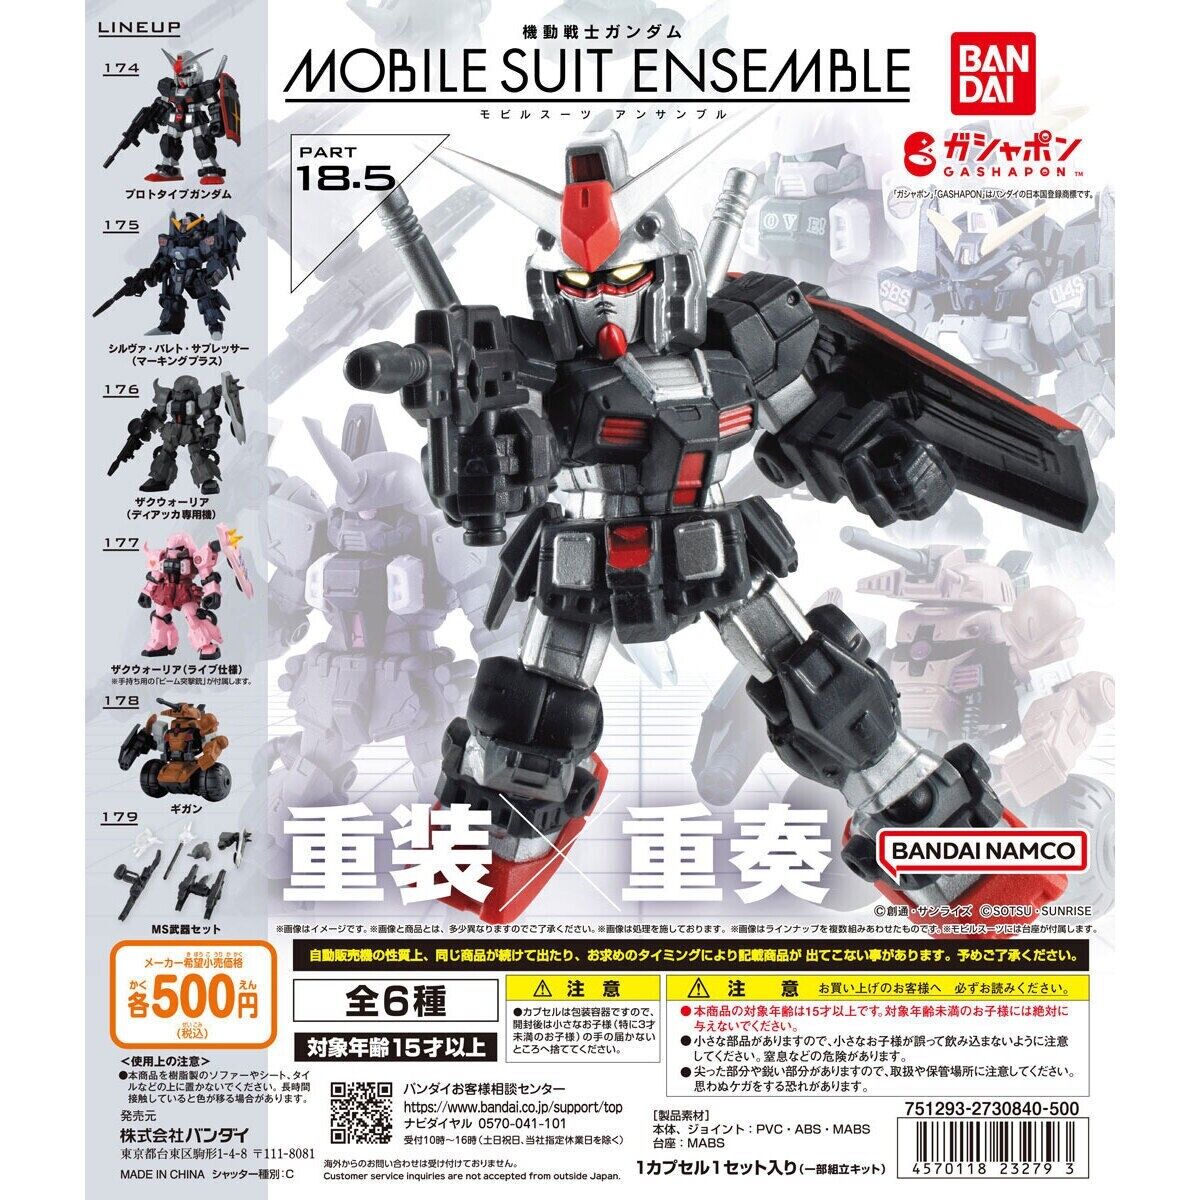 Mobile Suit Gundam MOBILE SUIT ENSEMBLE 18.5 Total 6 kinds complete BANDAI